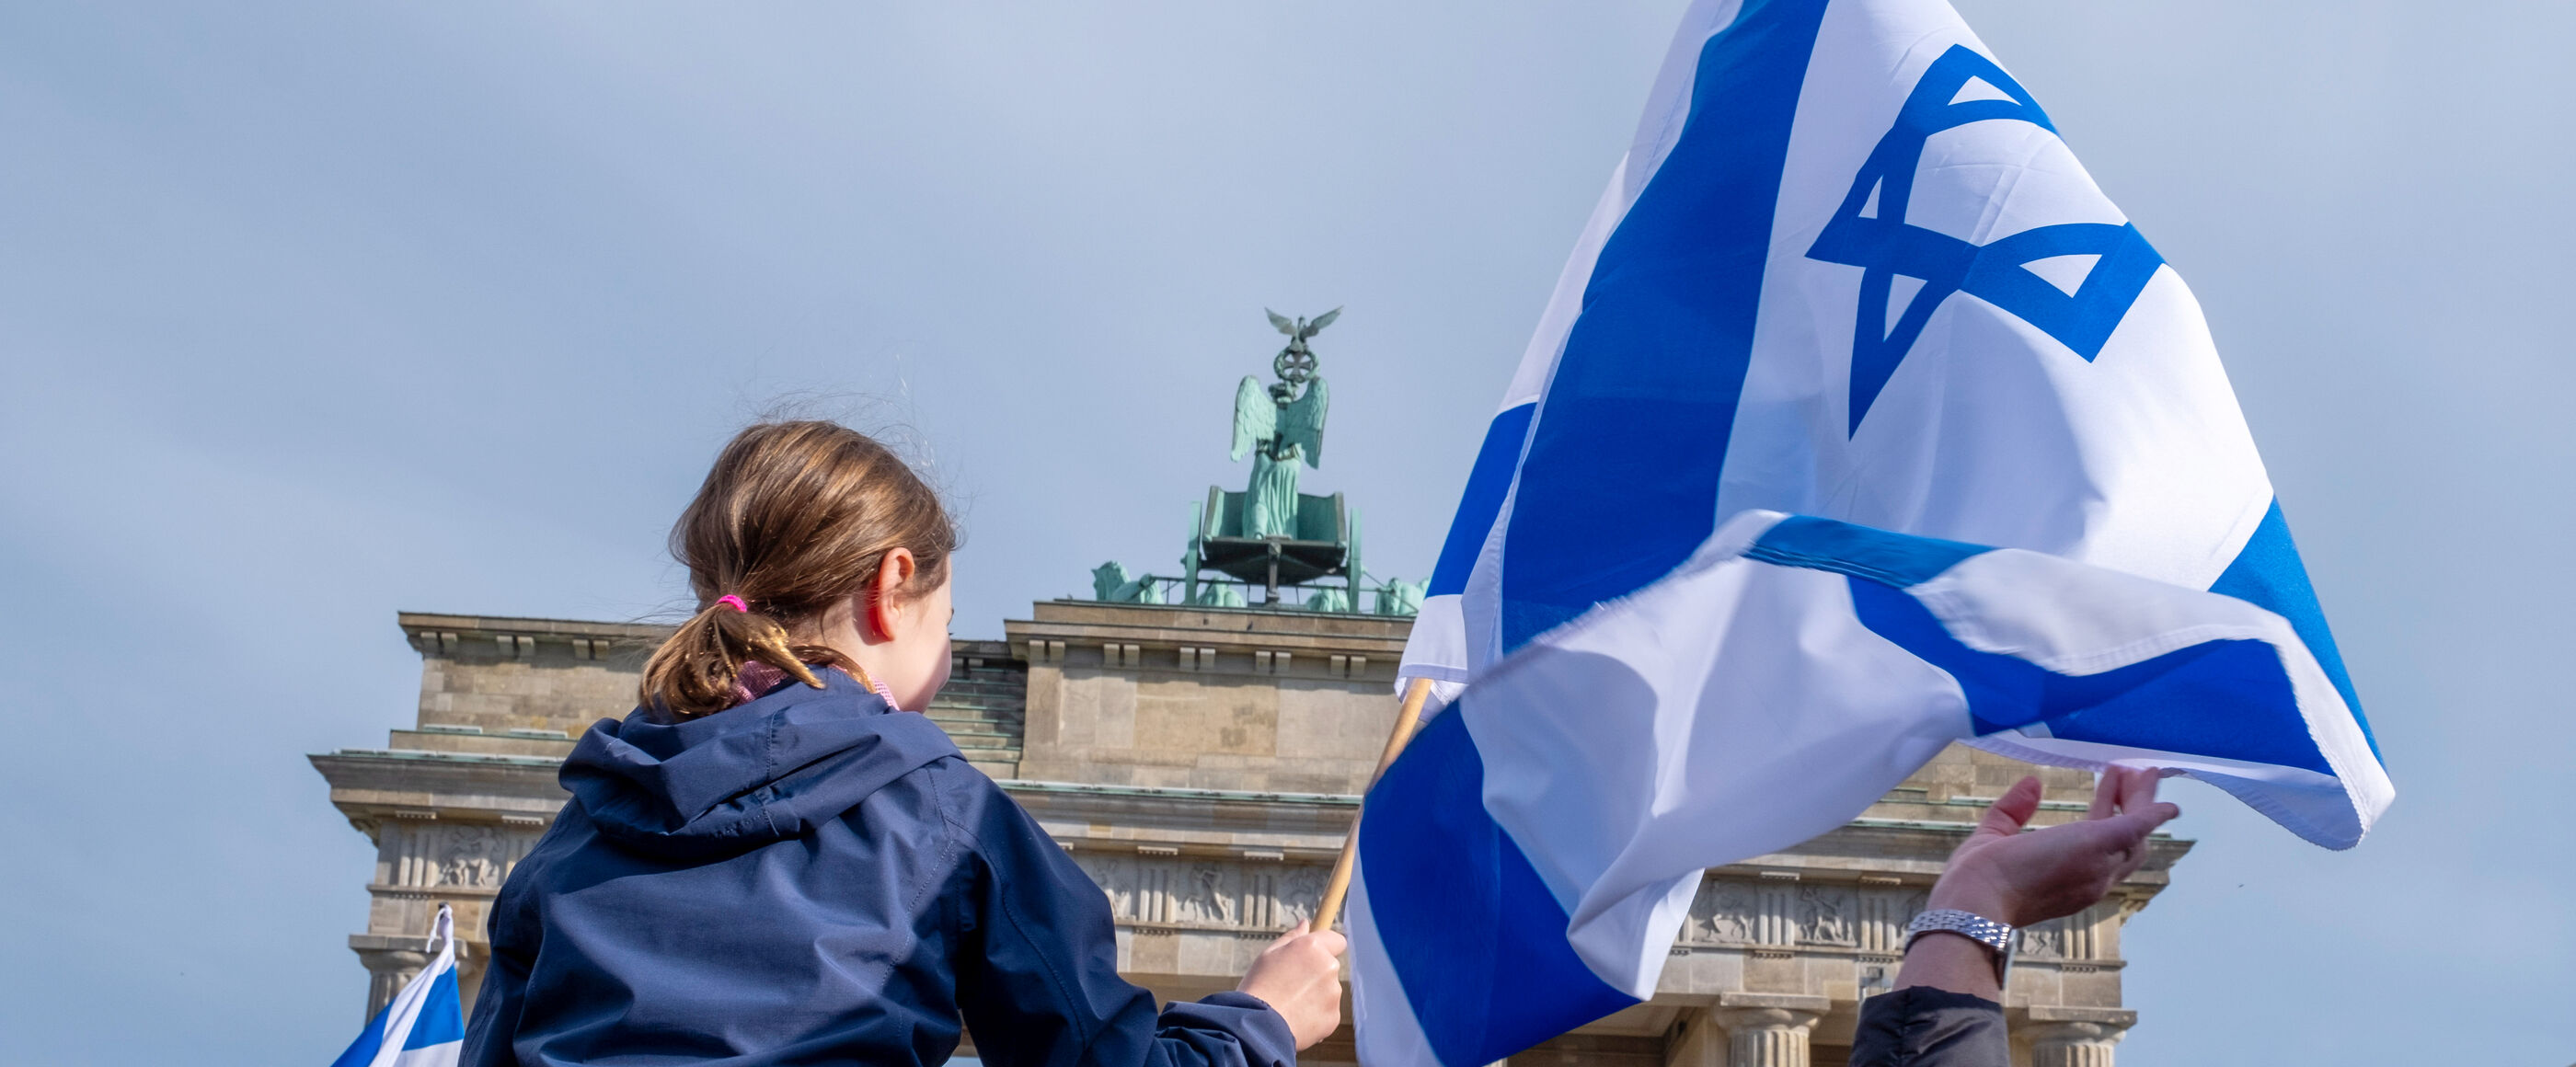 Im Hintergrund das Brandenburger Tor, im Vordergrund sitzt ein Kind auf den Schultern eines Menschen und hält eine Israel-Fahne.